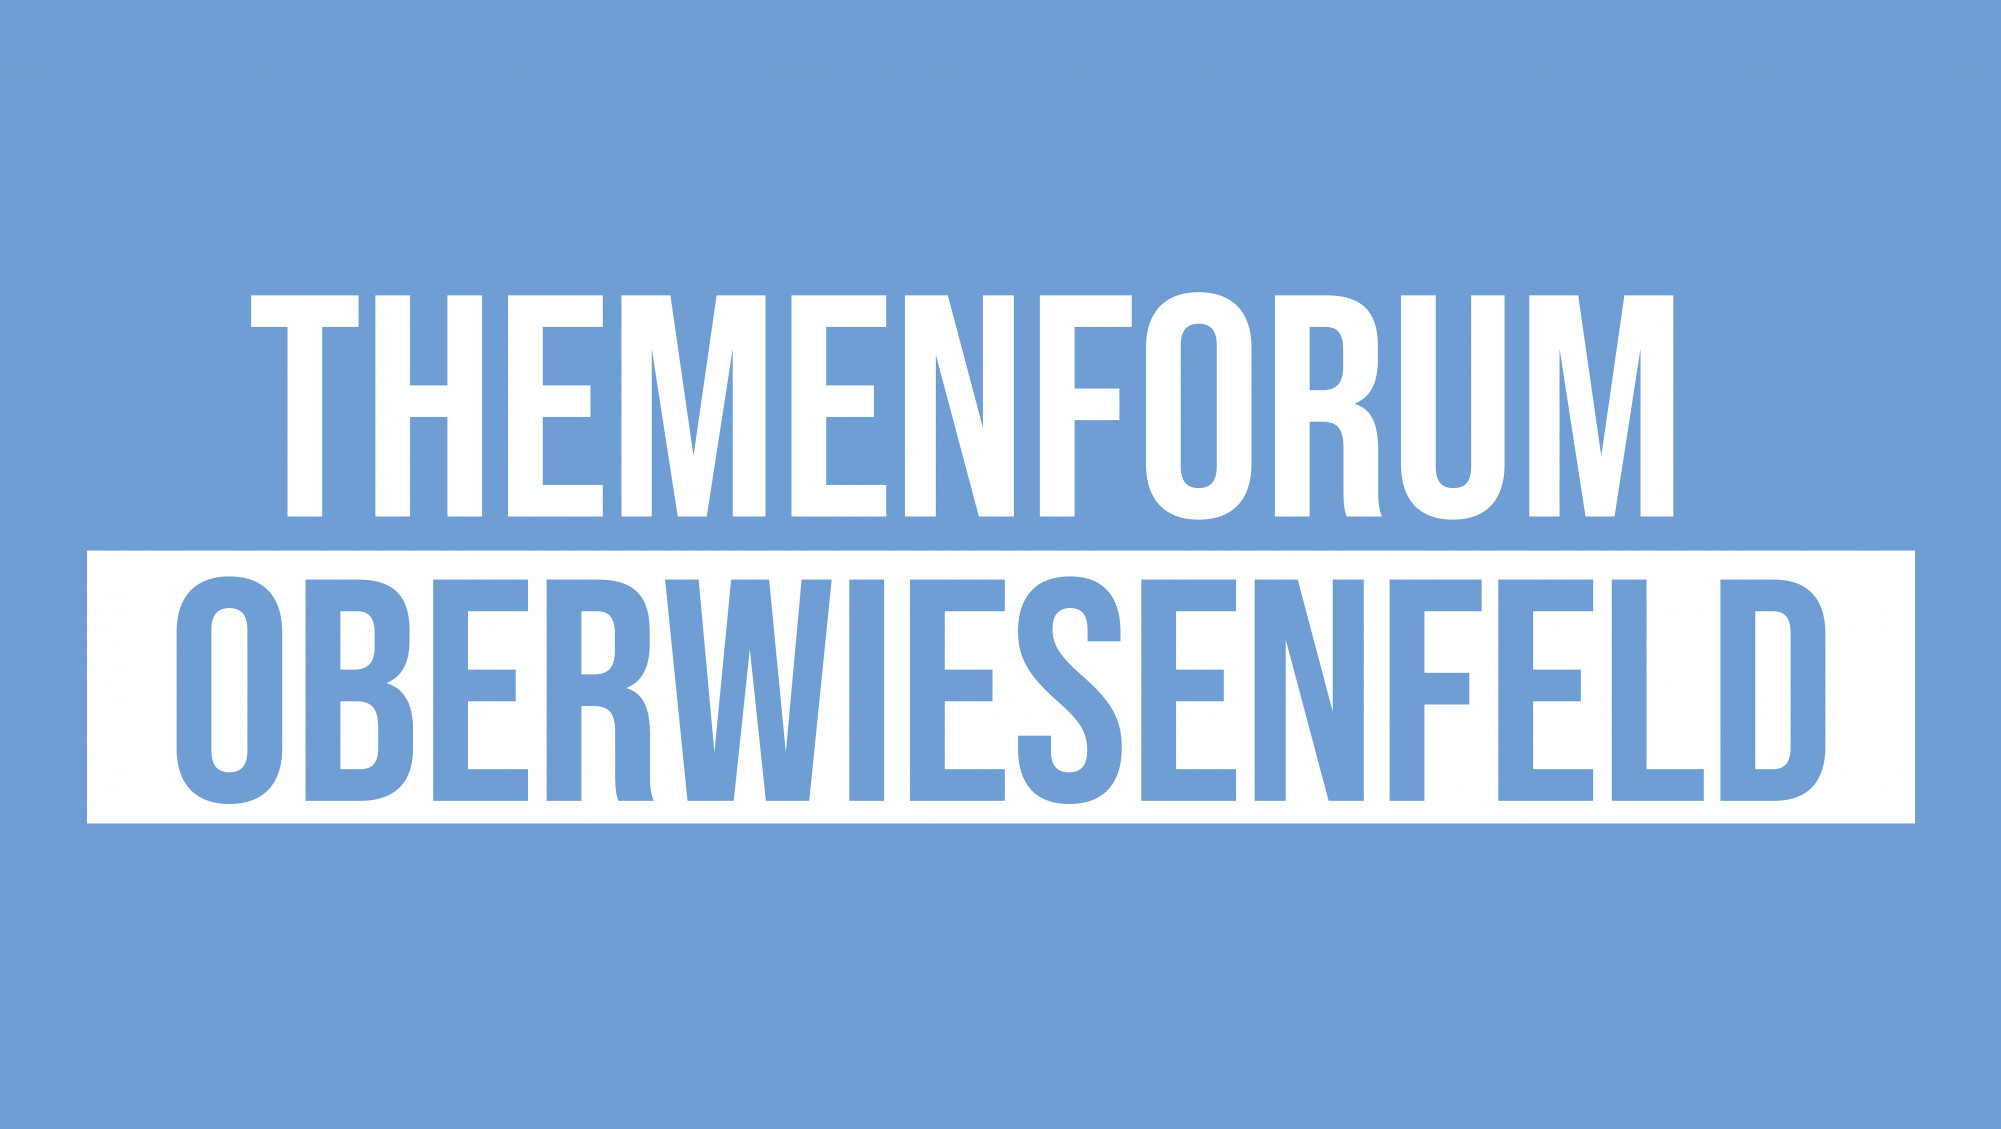 Kachel mit der Schrift "Themenforum Oberwiesenfeld"